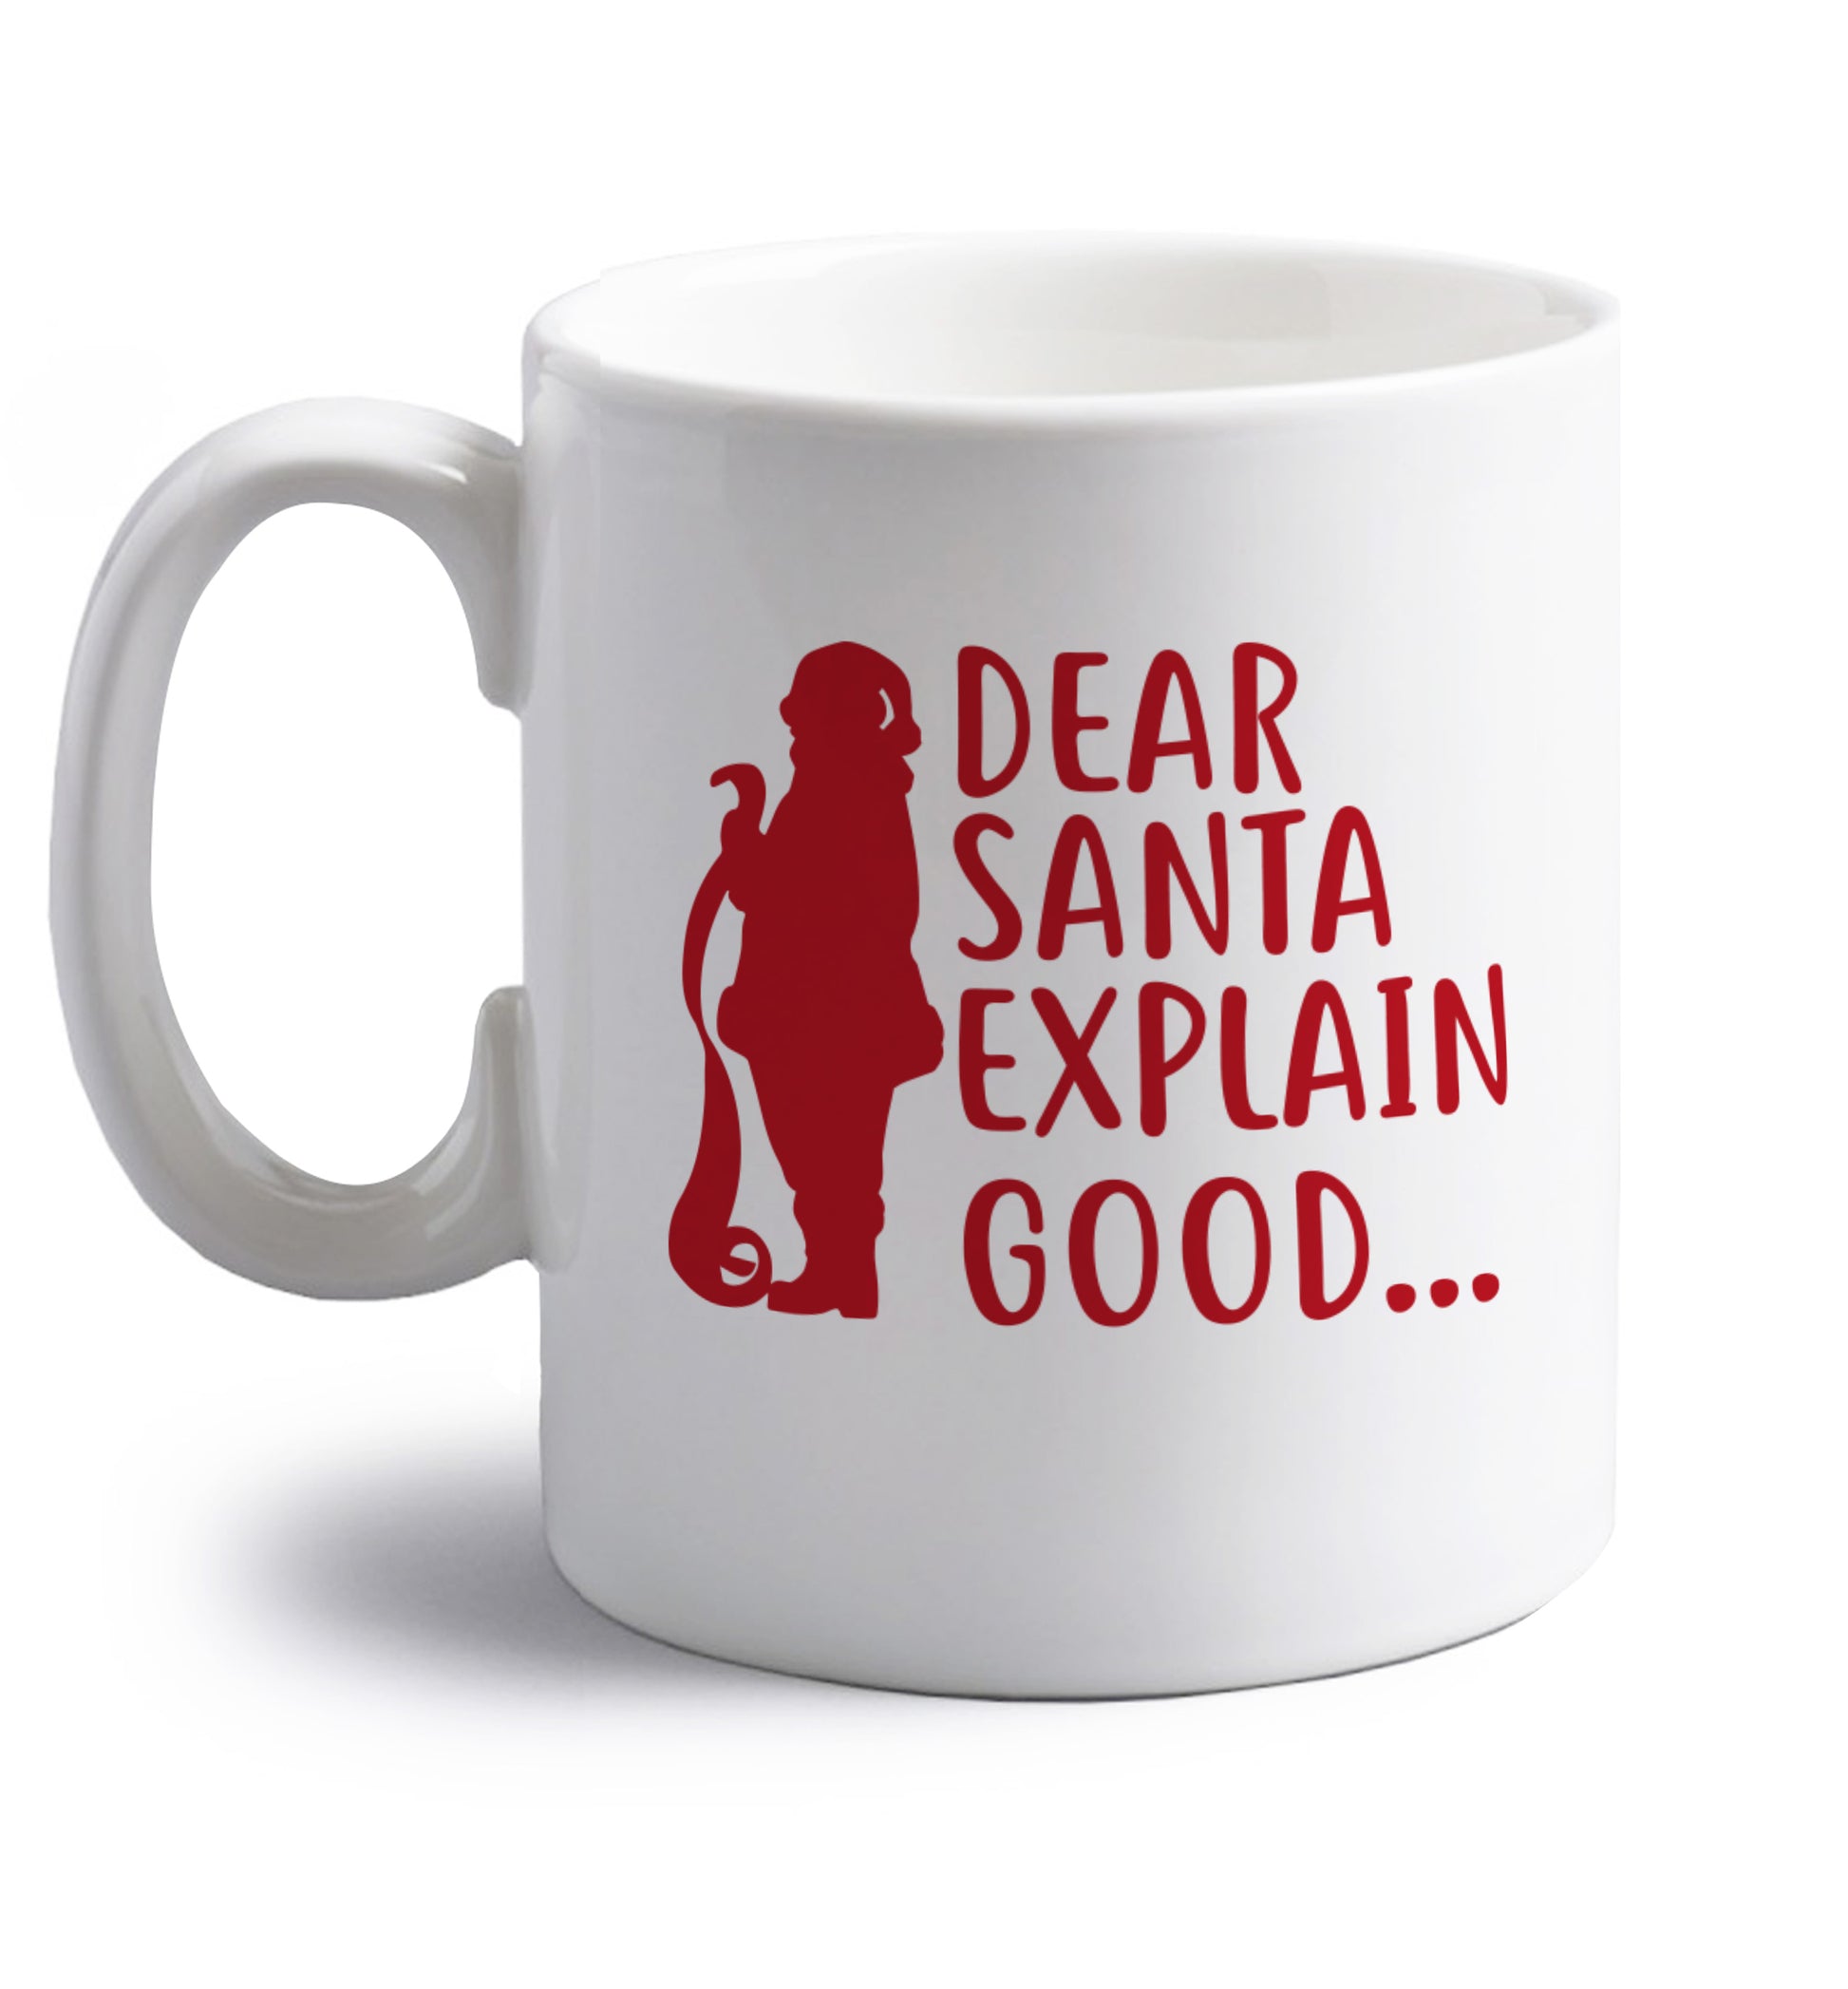 Dear Santa explain good... right handed white ceramic mug 